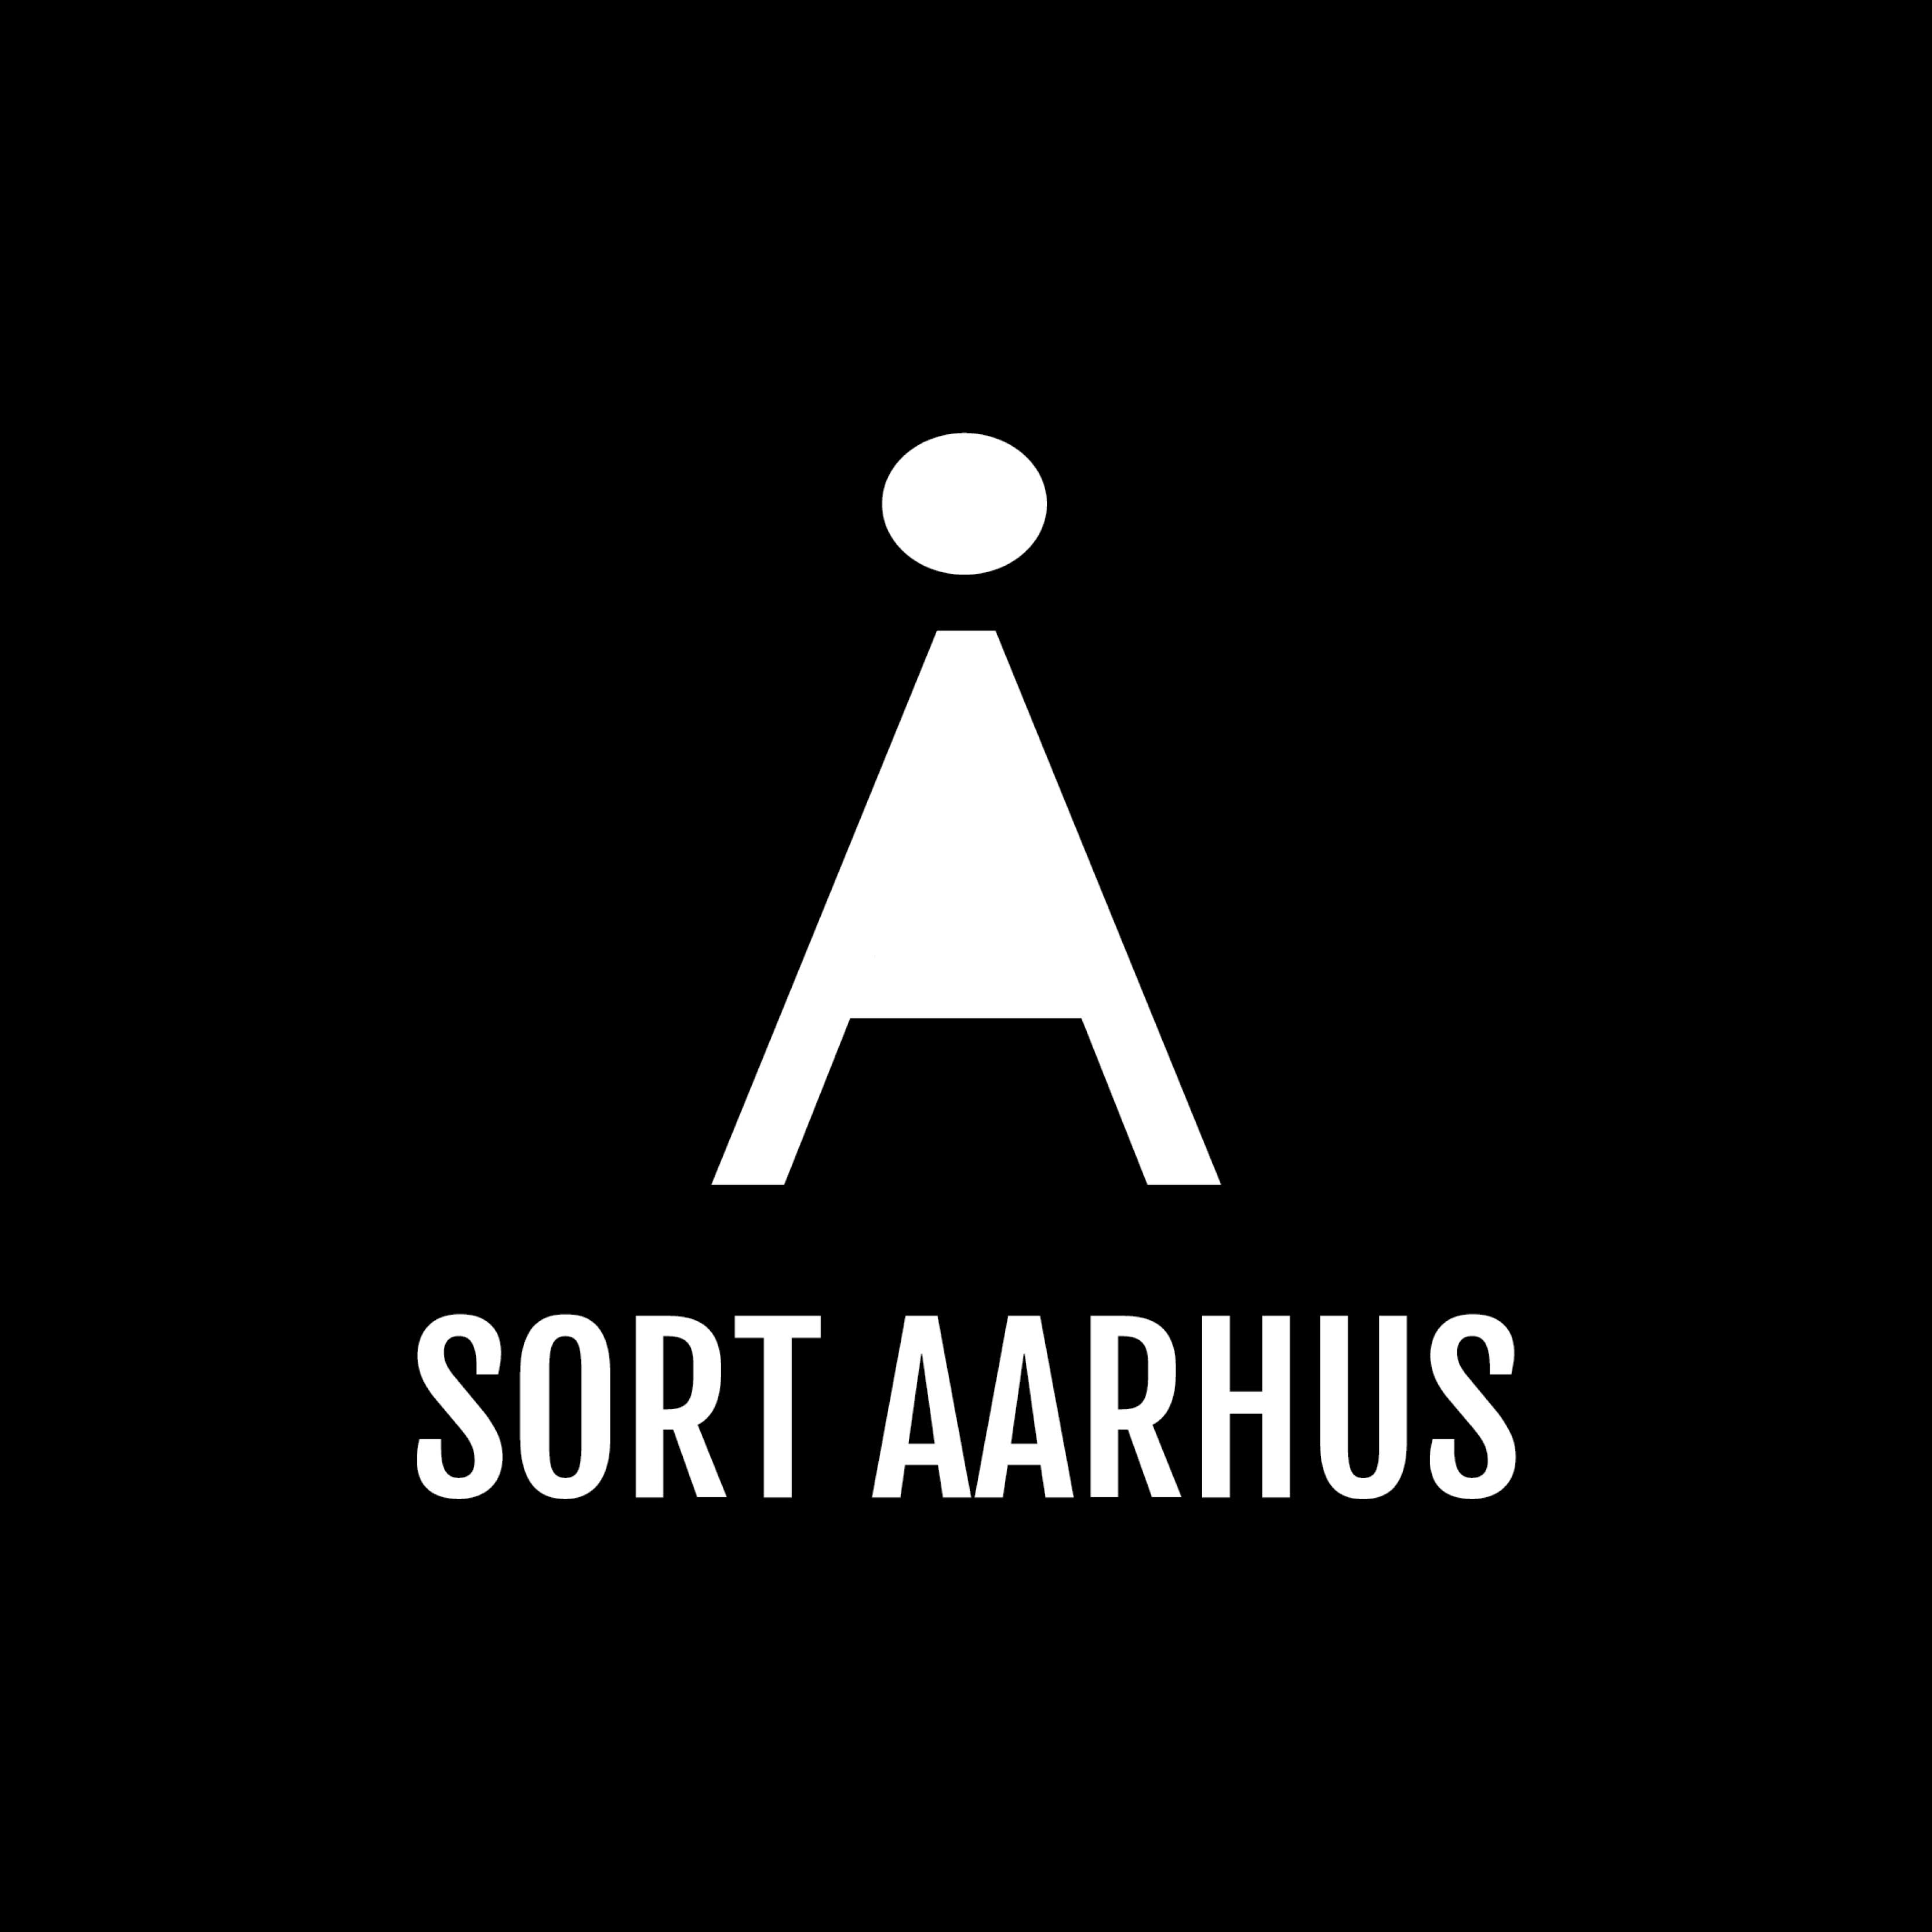 Sort Aarhus